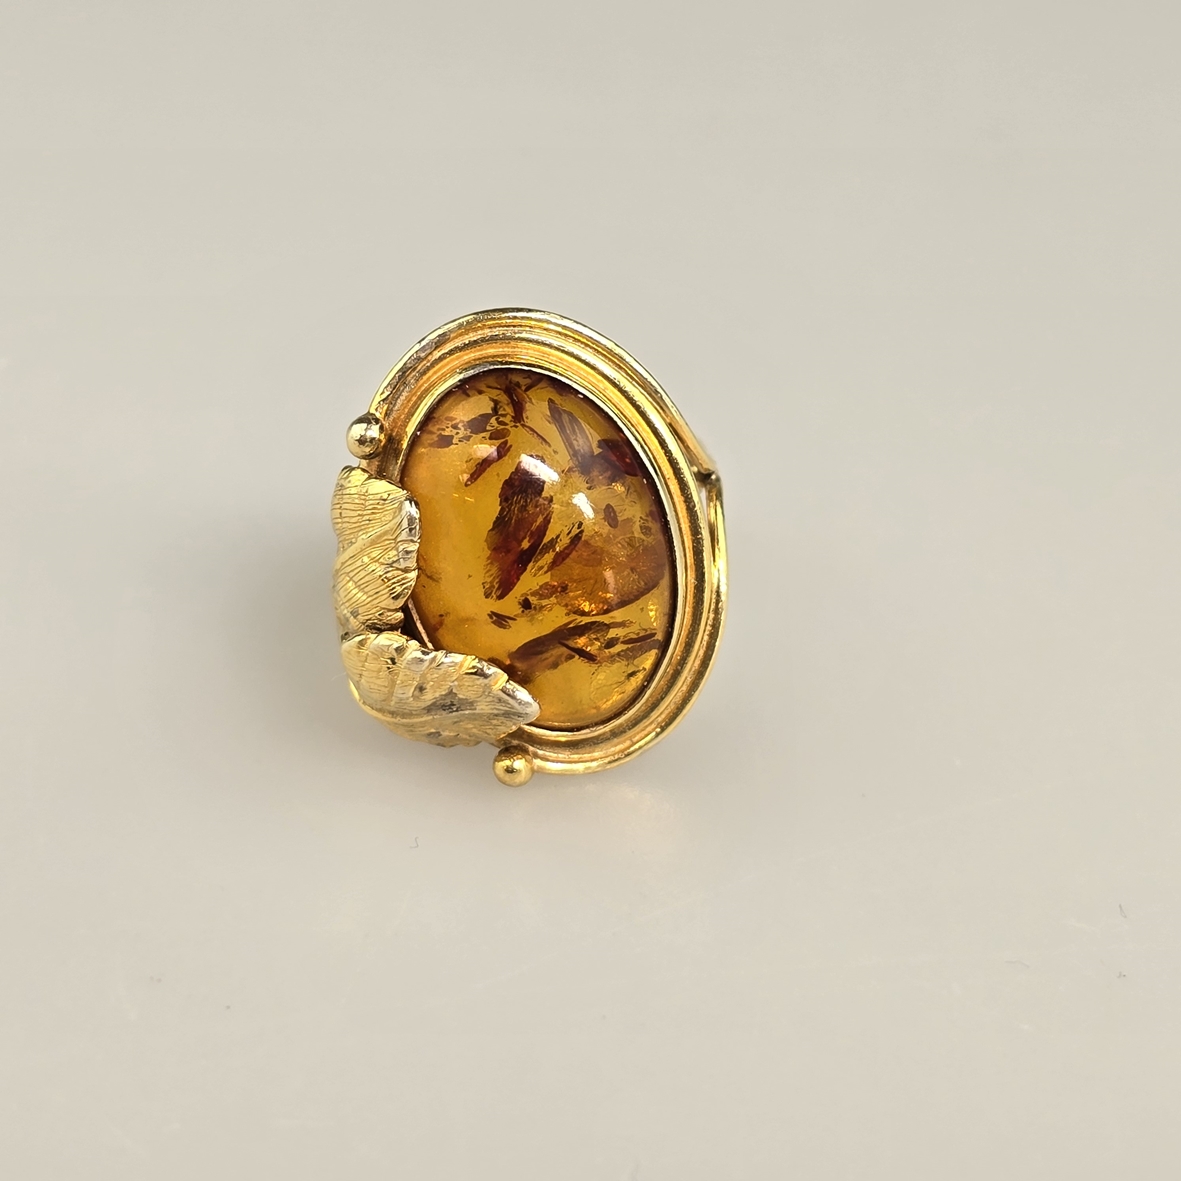 Bernsteinring - Silber 925/000, vergoldet, außen gestempelt, Bernstein von ca.18 x 12 mm, Ringgröße - Image 4 of 8